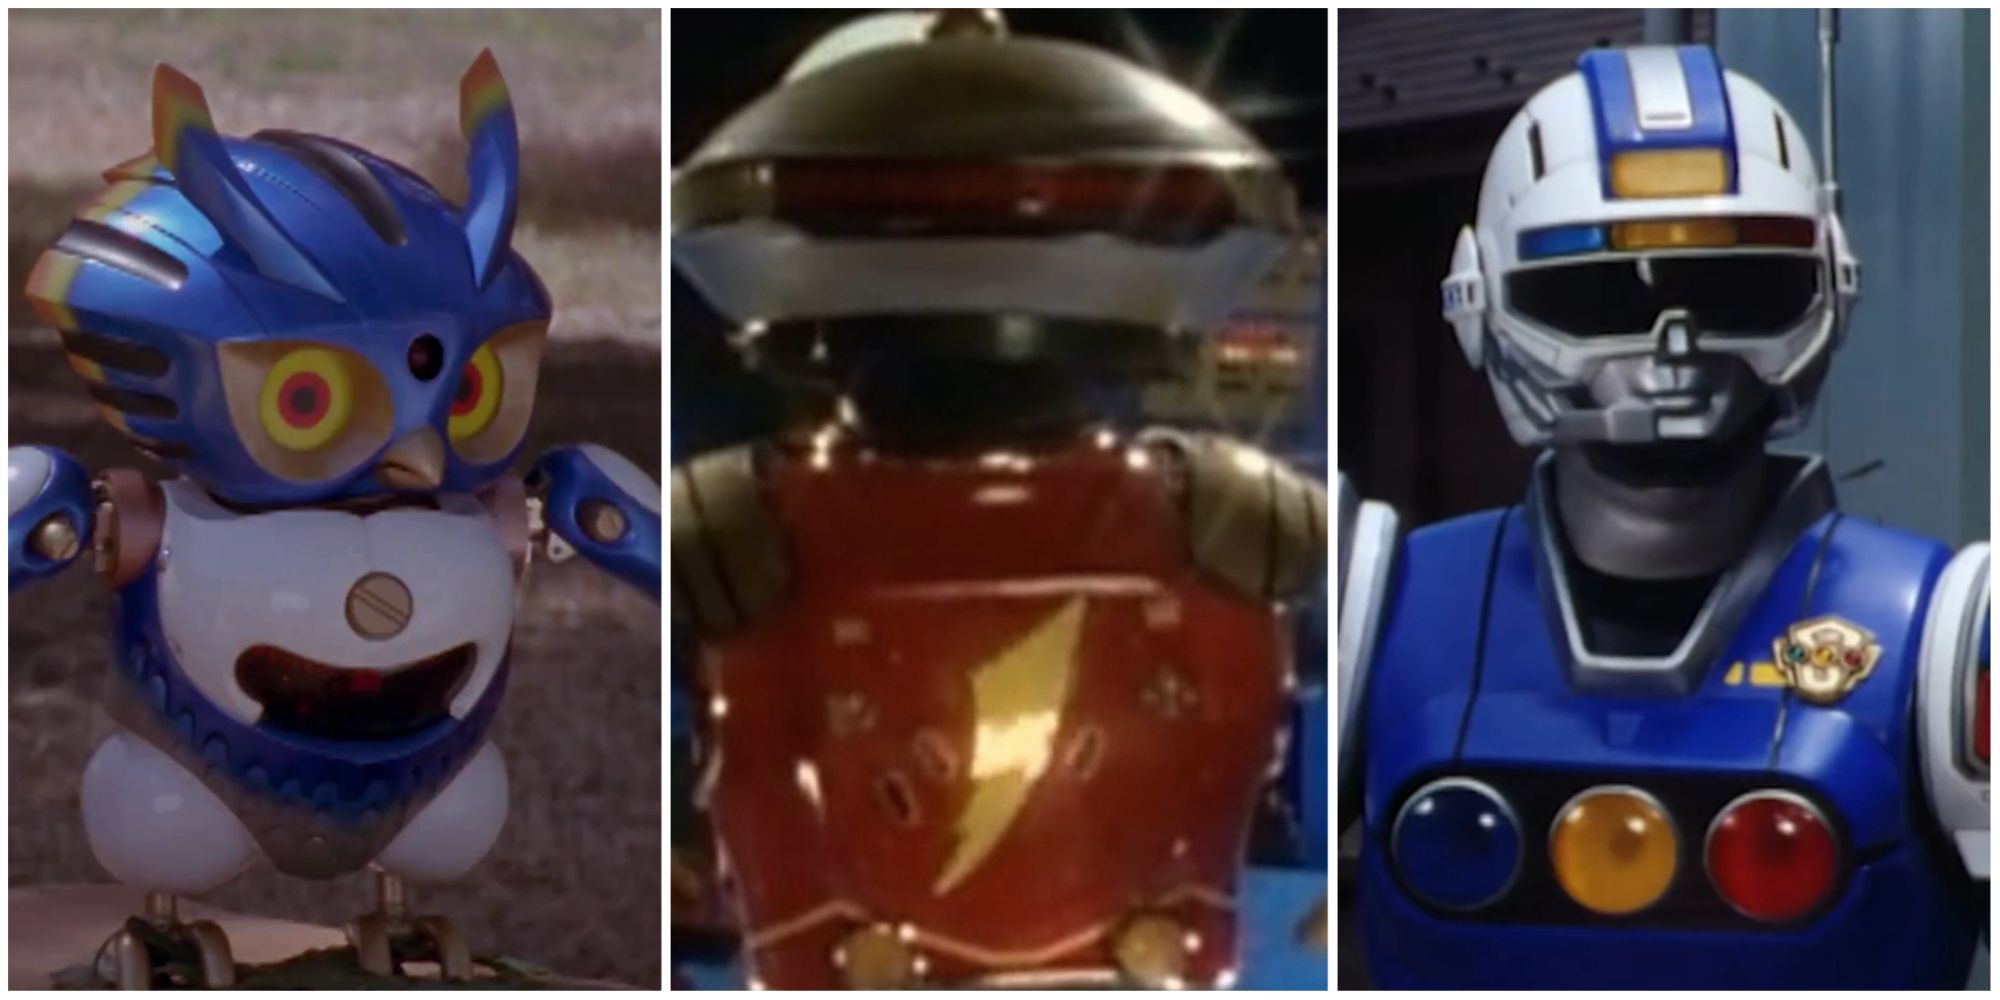 bestikke Paine Gillic Tak for din hjælp 10 Best Power Rangers Robots